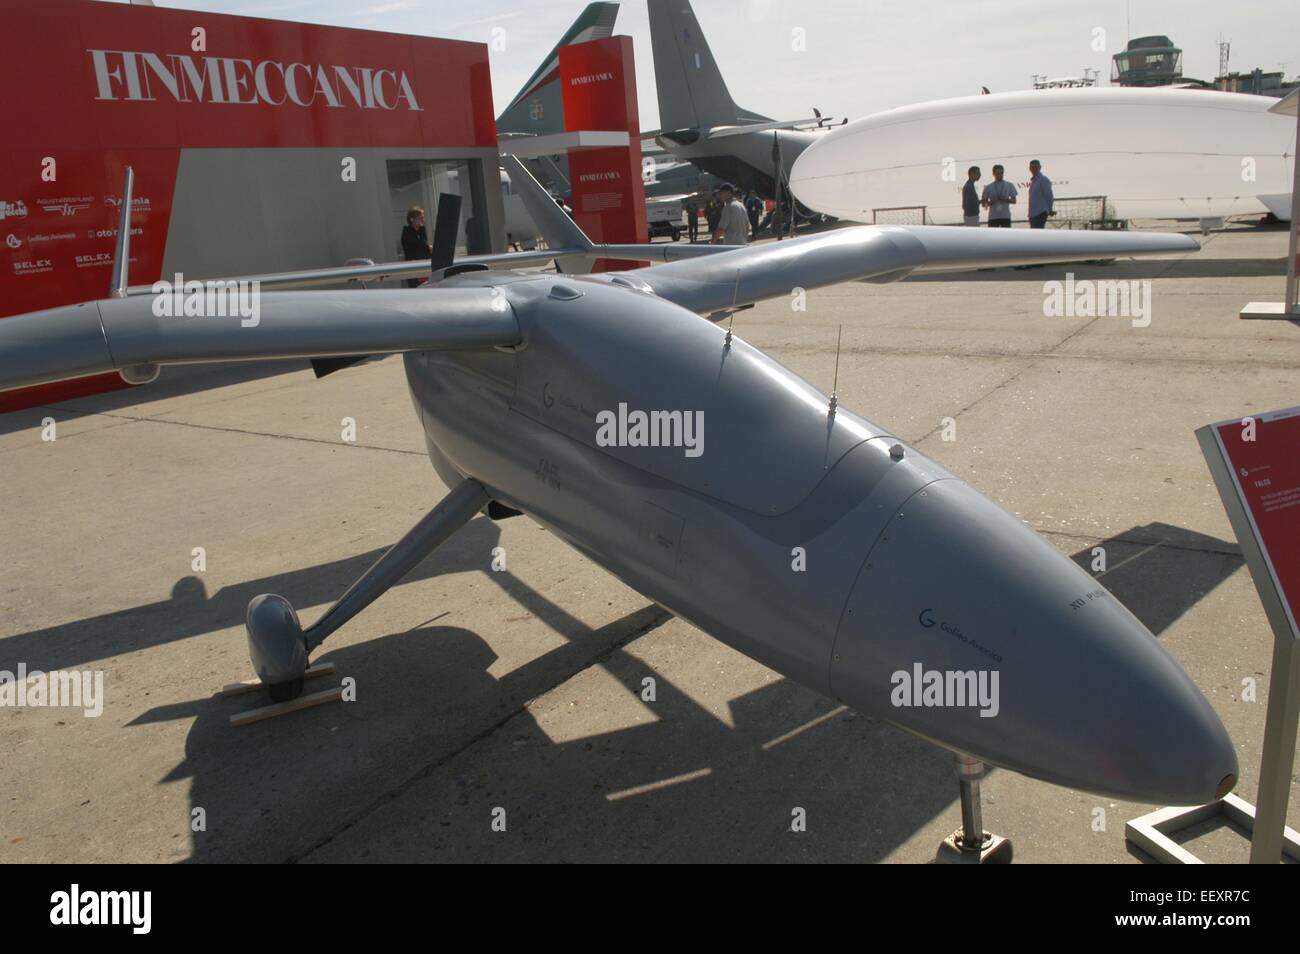 Vehículo aéreo no tripulado (UAV) Alenia Falco Foto de stock